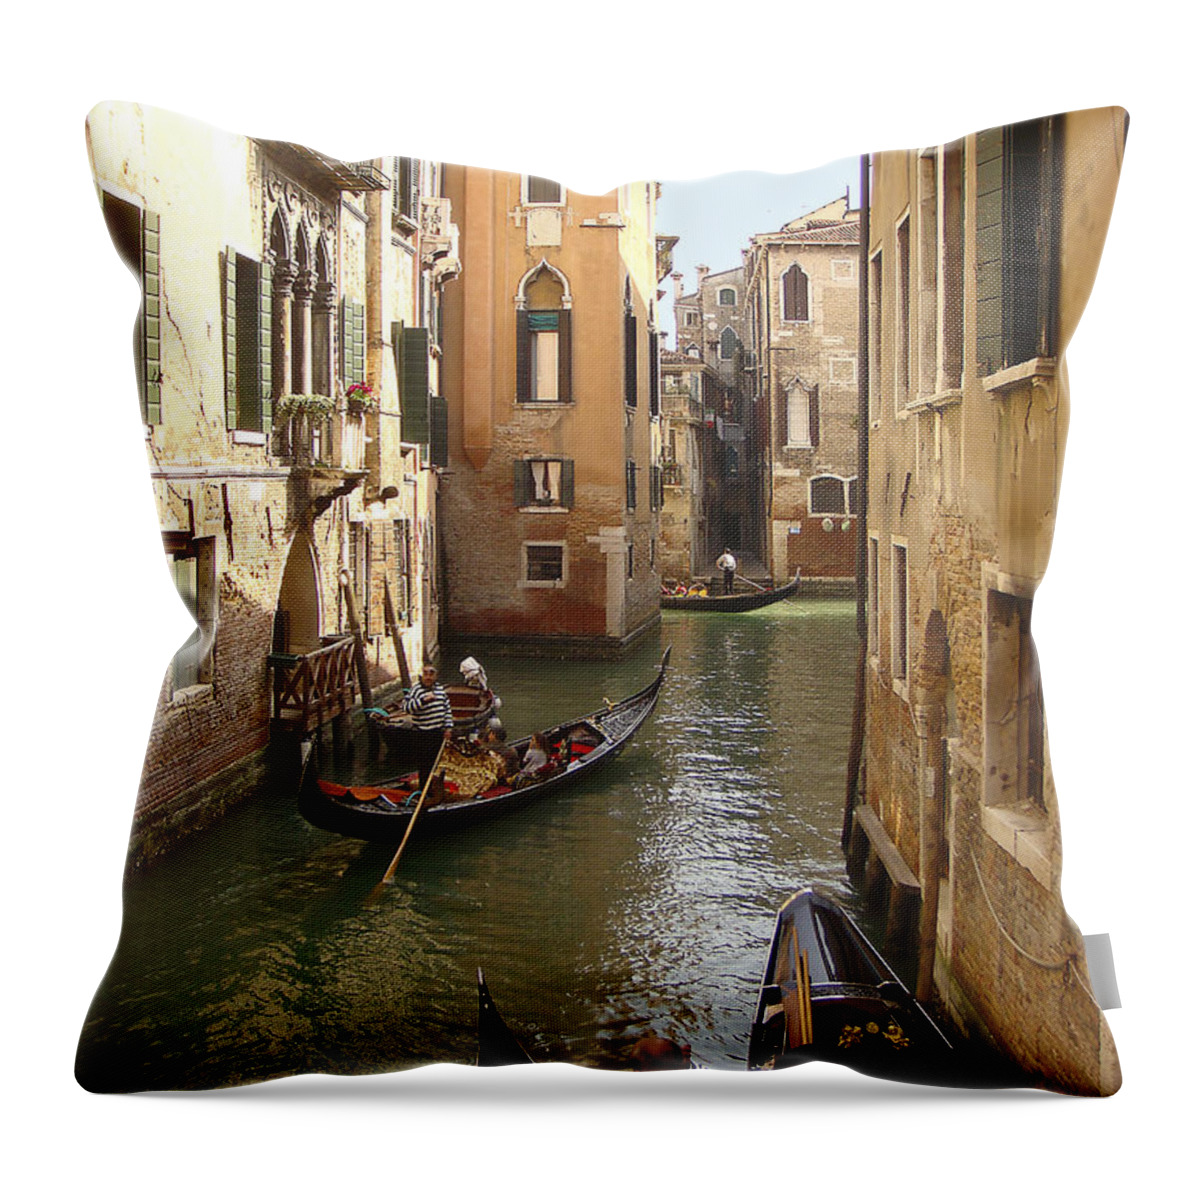 Europe Throw Pillow featuring the photograph Venice Gondolas by Karen Zuk Rosenblatt